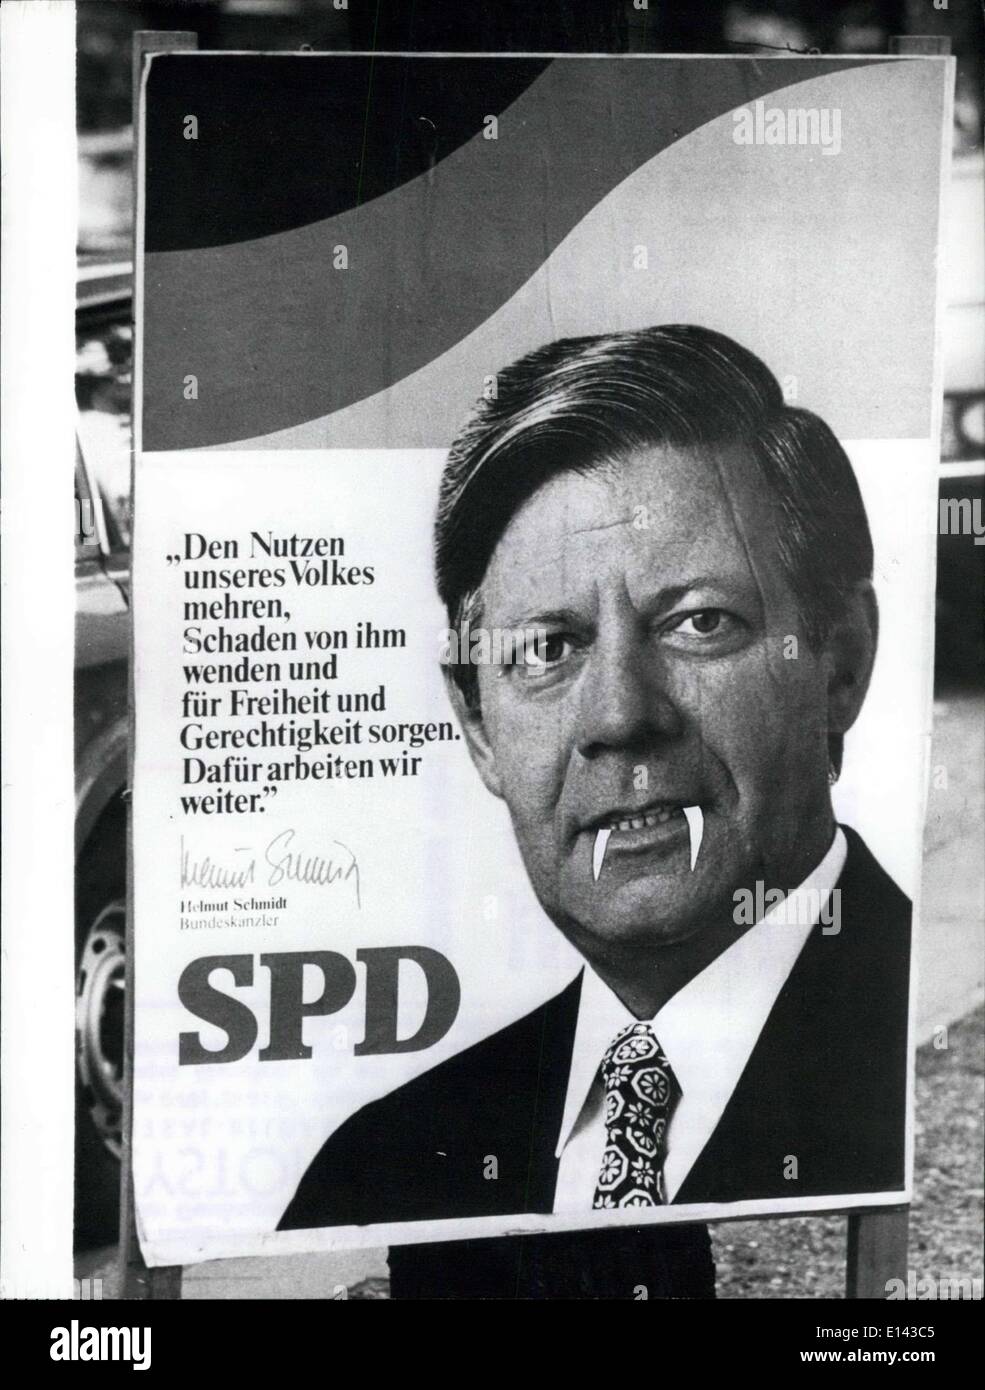 4. April 2012 - der Zahnarzt und die falschen Zähne. Falsche Zähne Kosten jetzt, im Februar 1978, Zahnarzt in Hamburg (Westdeutschland) 3000 Mark. Zuerst die Zähne sind '' Vampirzähne '' und zweitens waren sie '' eingefügt '' Bundeskanzler Helmut Schmidt aber nur auf einem Wahlplakat des Bundestages Wahl 1976 (Bild). Der Zahnarzt sagte, dass es war nur ein Gag nach einer feuchten Nacht. Stockfoto